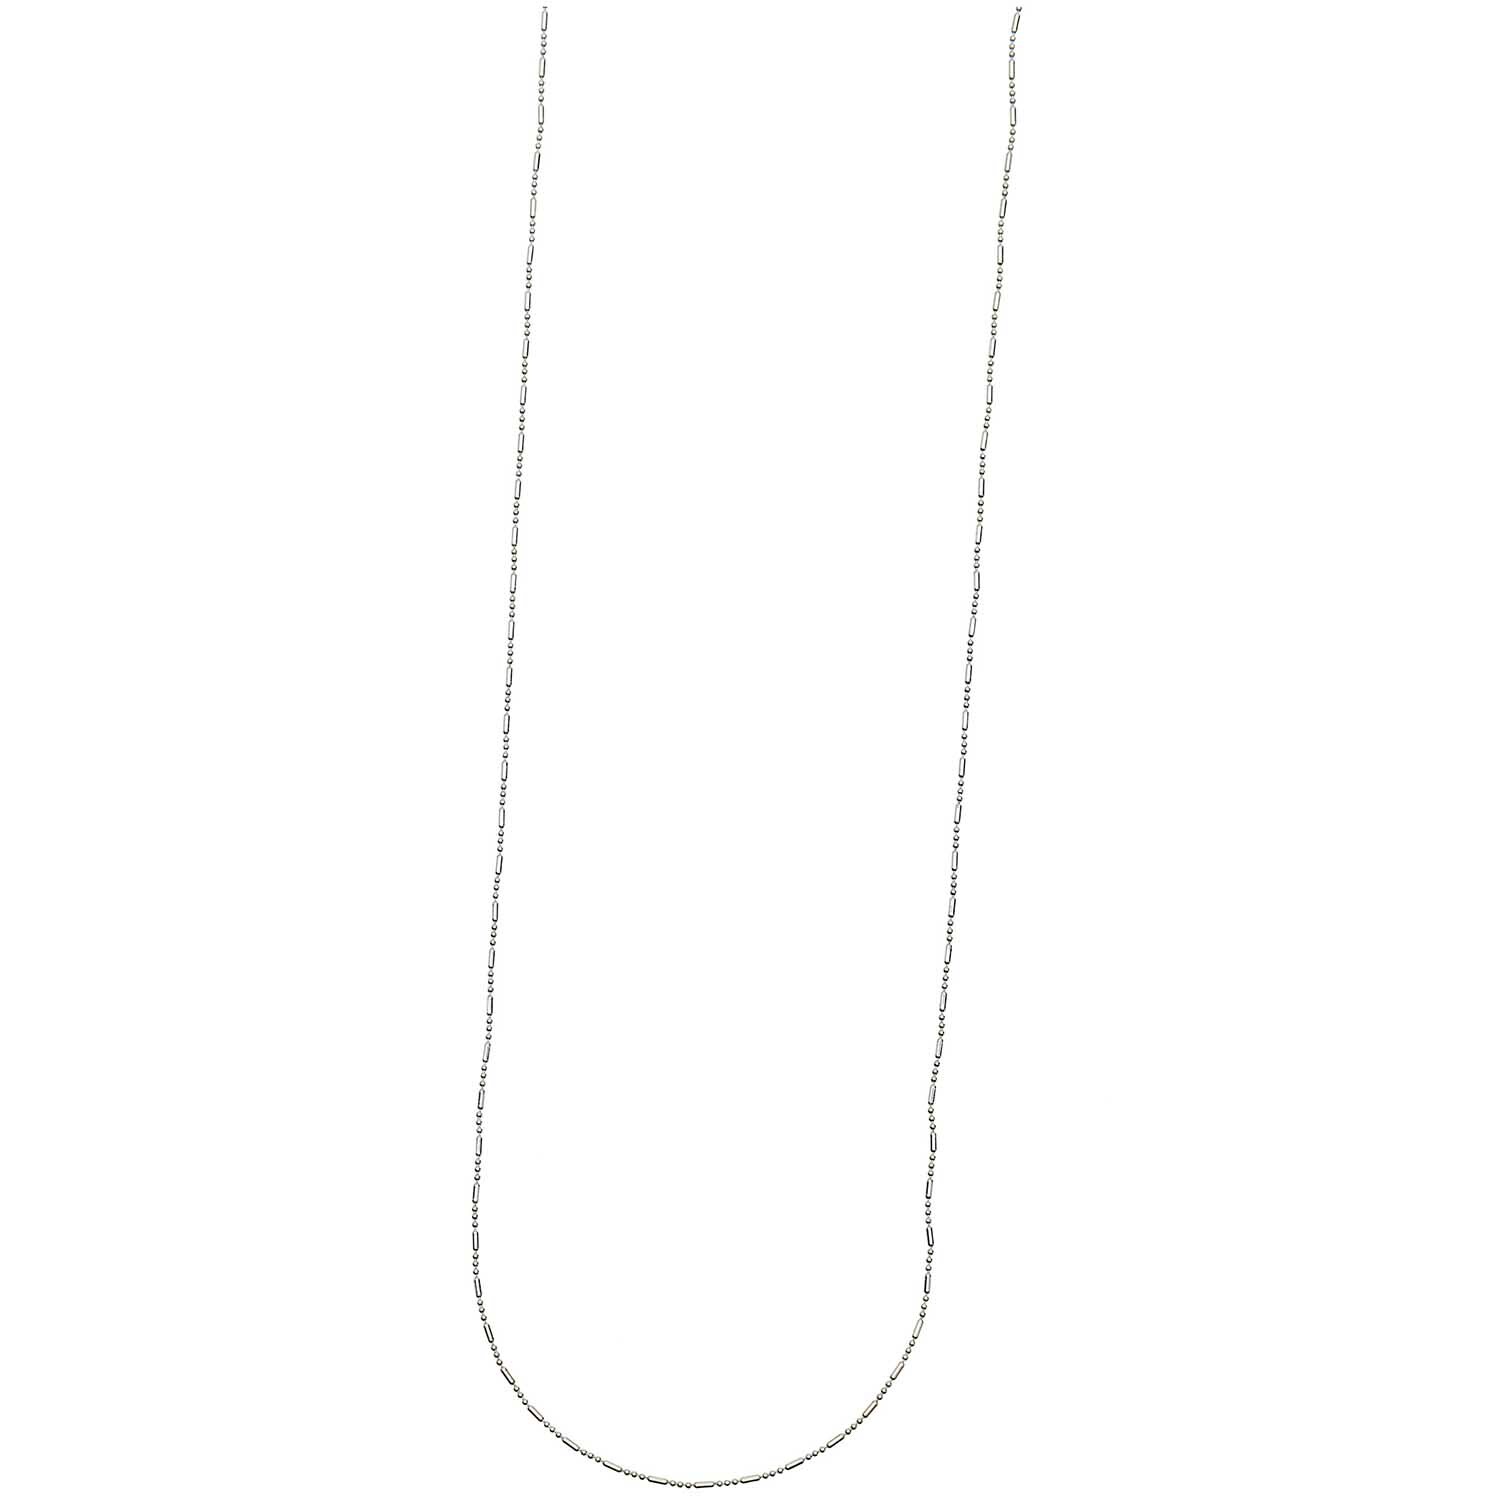 Kügelchenkette mit Steg silber 65cm